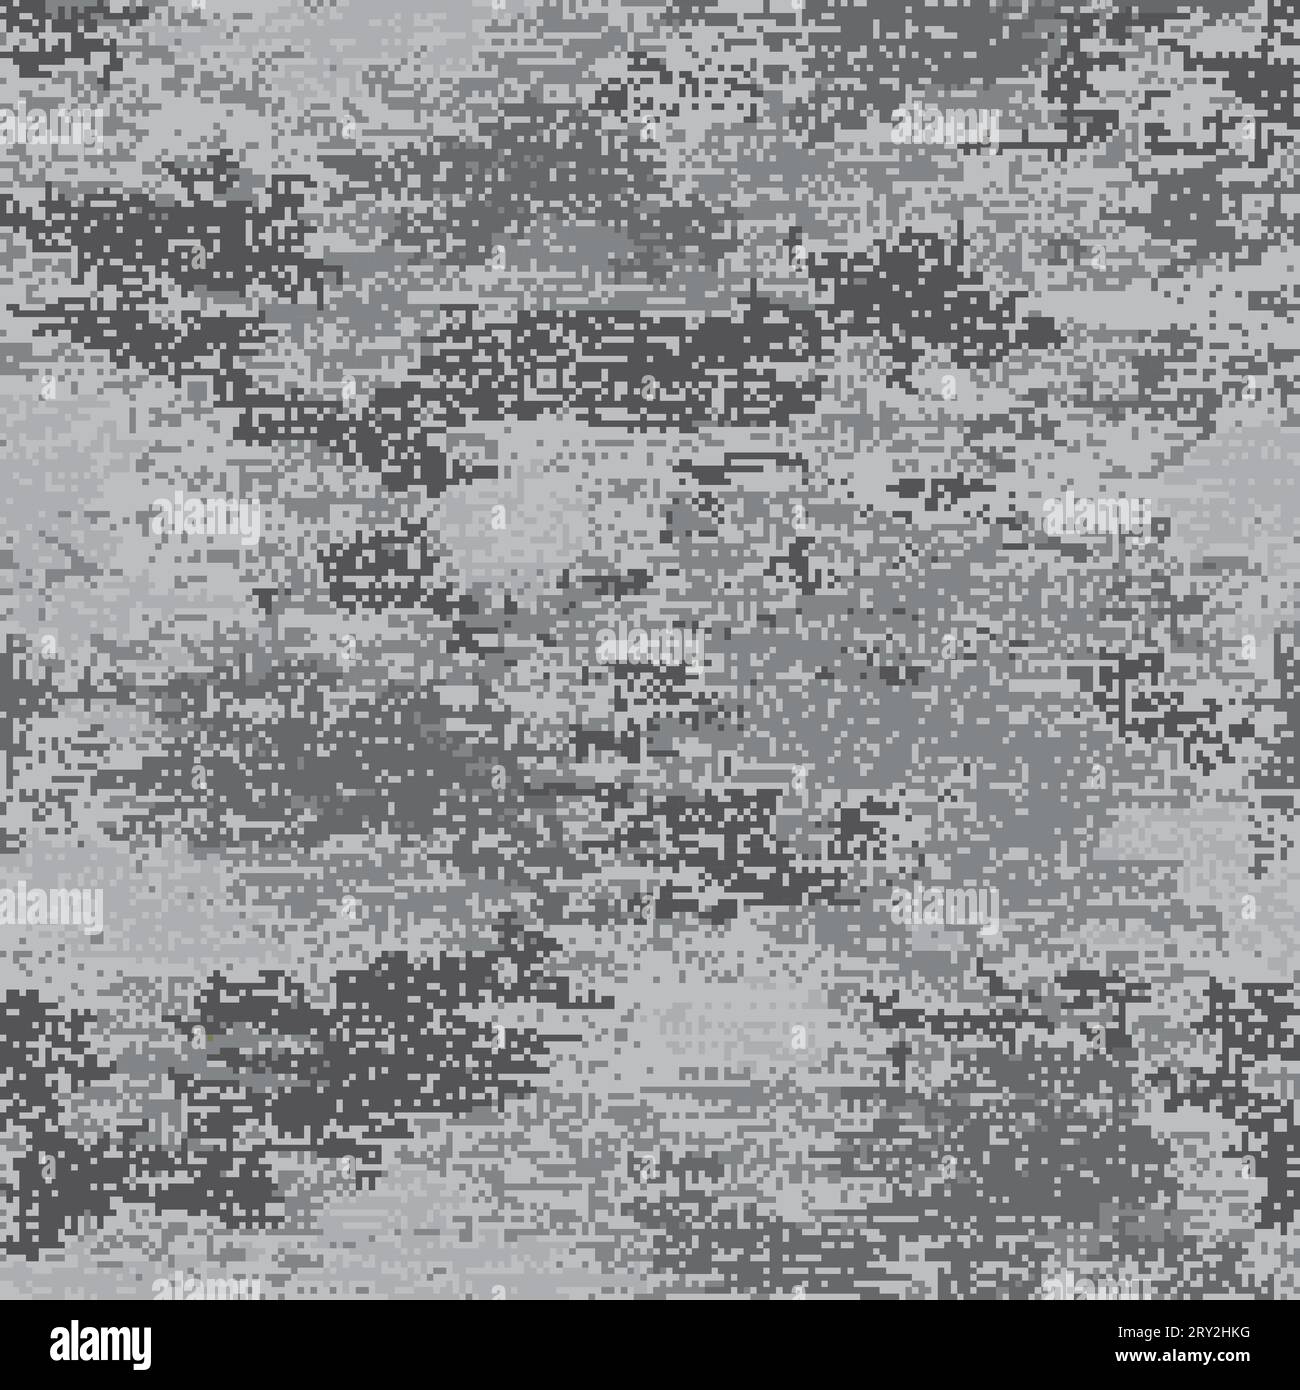 Mimetizzazione urbana digitale. Motivo senza cuciture che incorpora piccoli pixel di nero, bianco e grigio scuro su sfondo grigio chiaro. Illustrazione Vettoriale